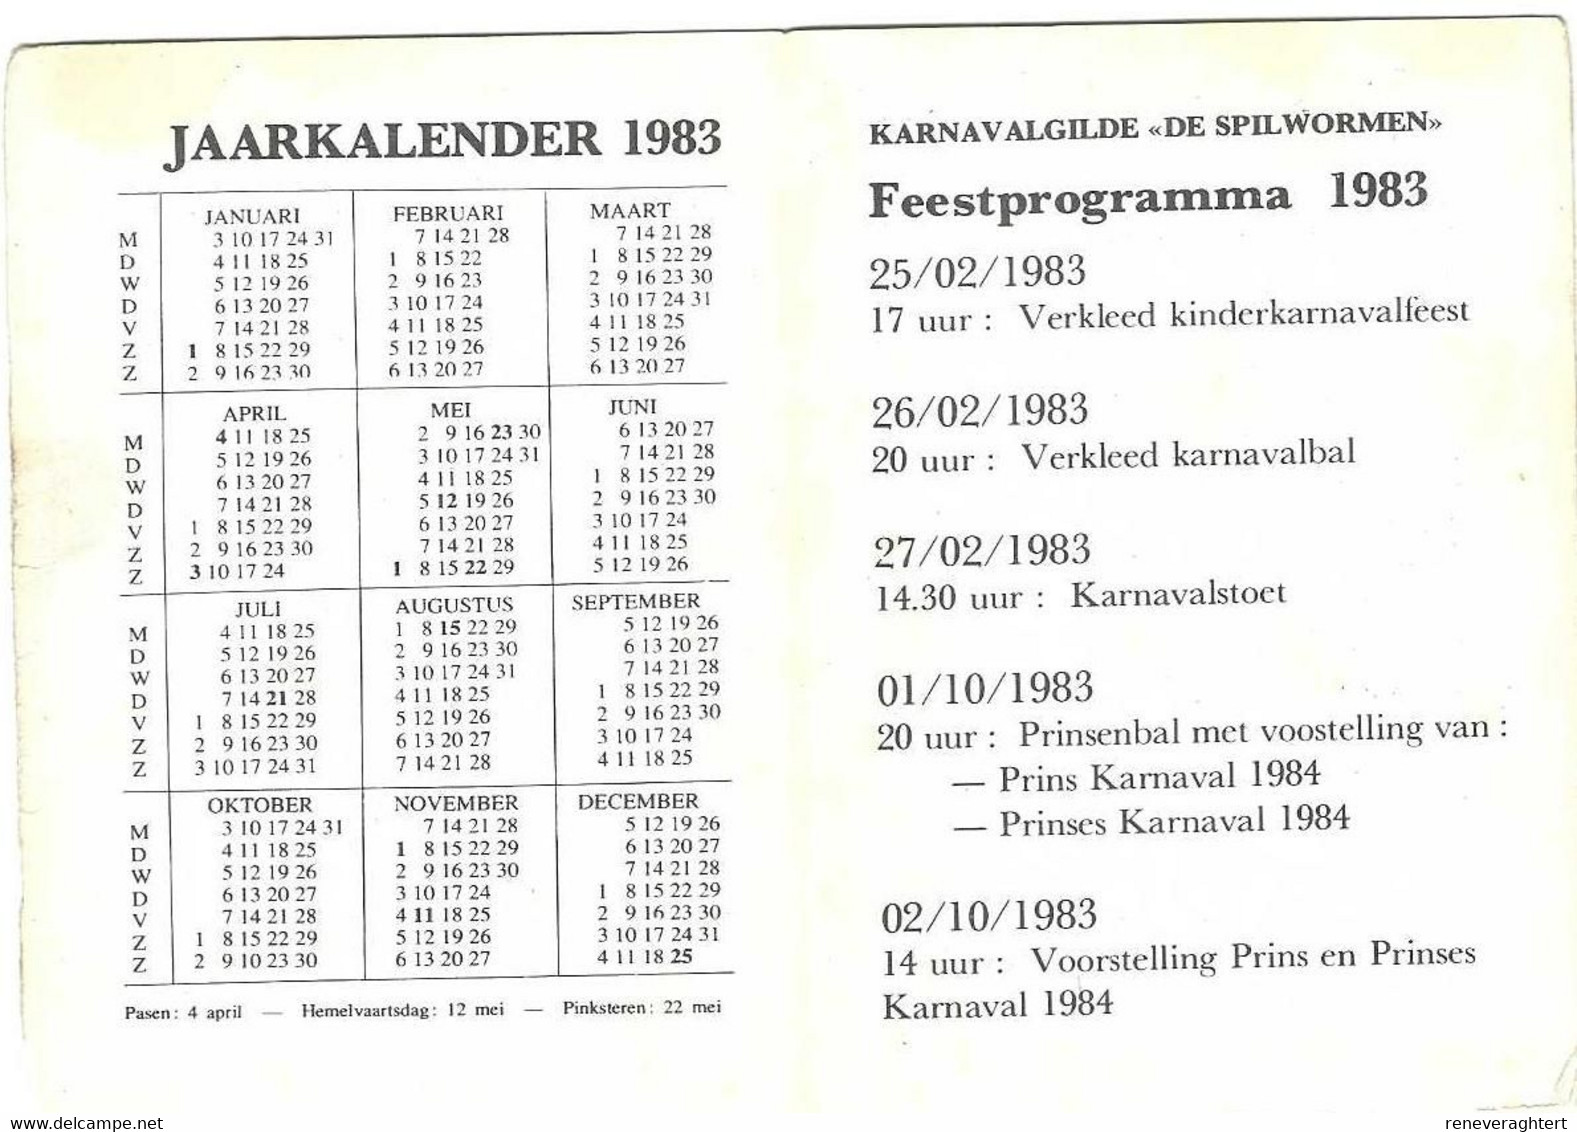 Geel - Kaartje Van Karnavalgilde 'De Spilwormen' Geel - Larem (Larum) - Grand Format : 1981-90